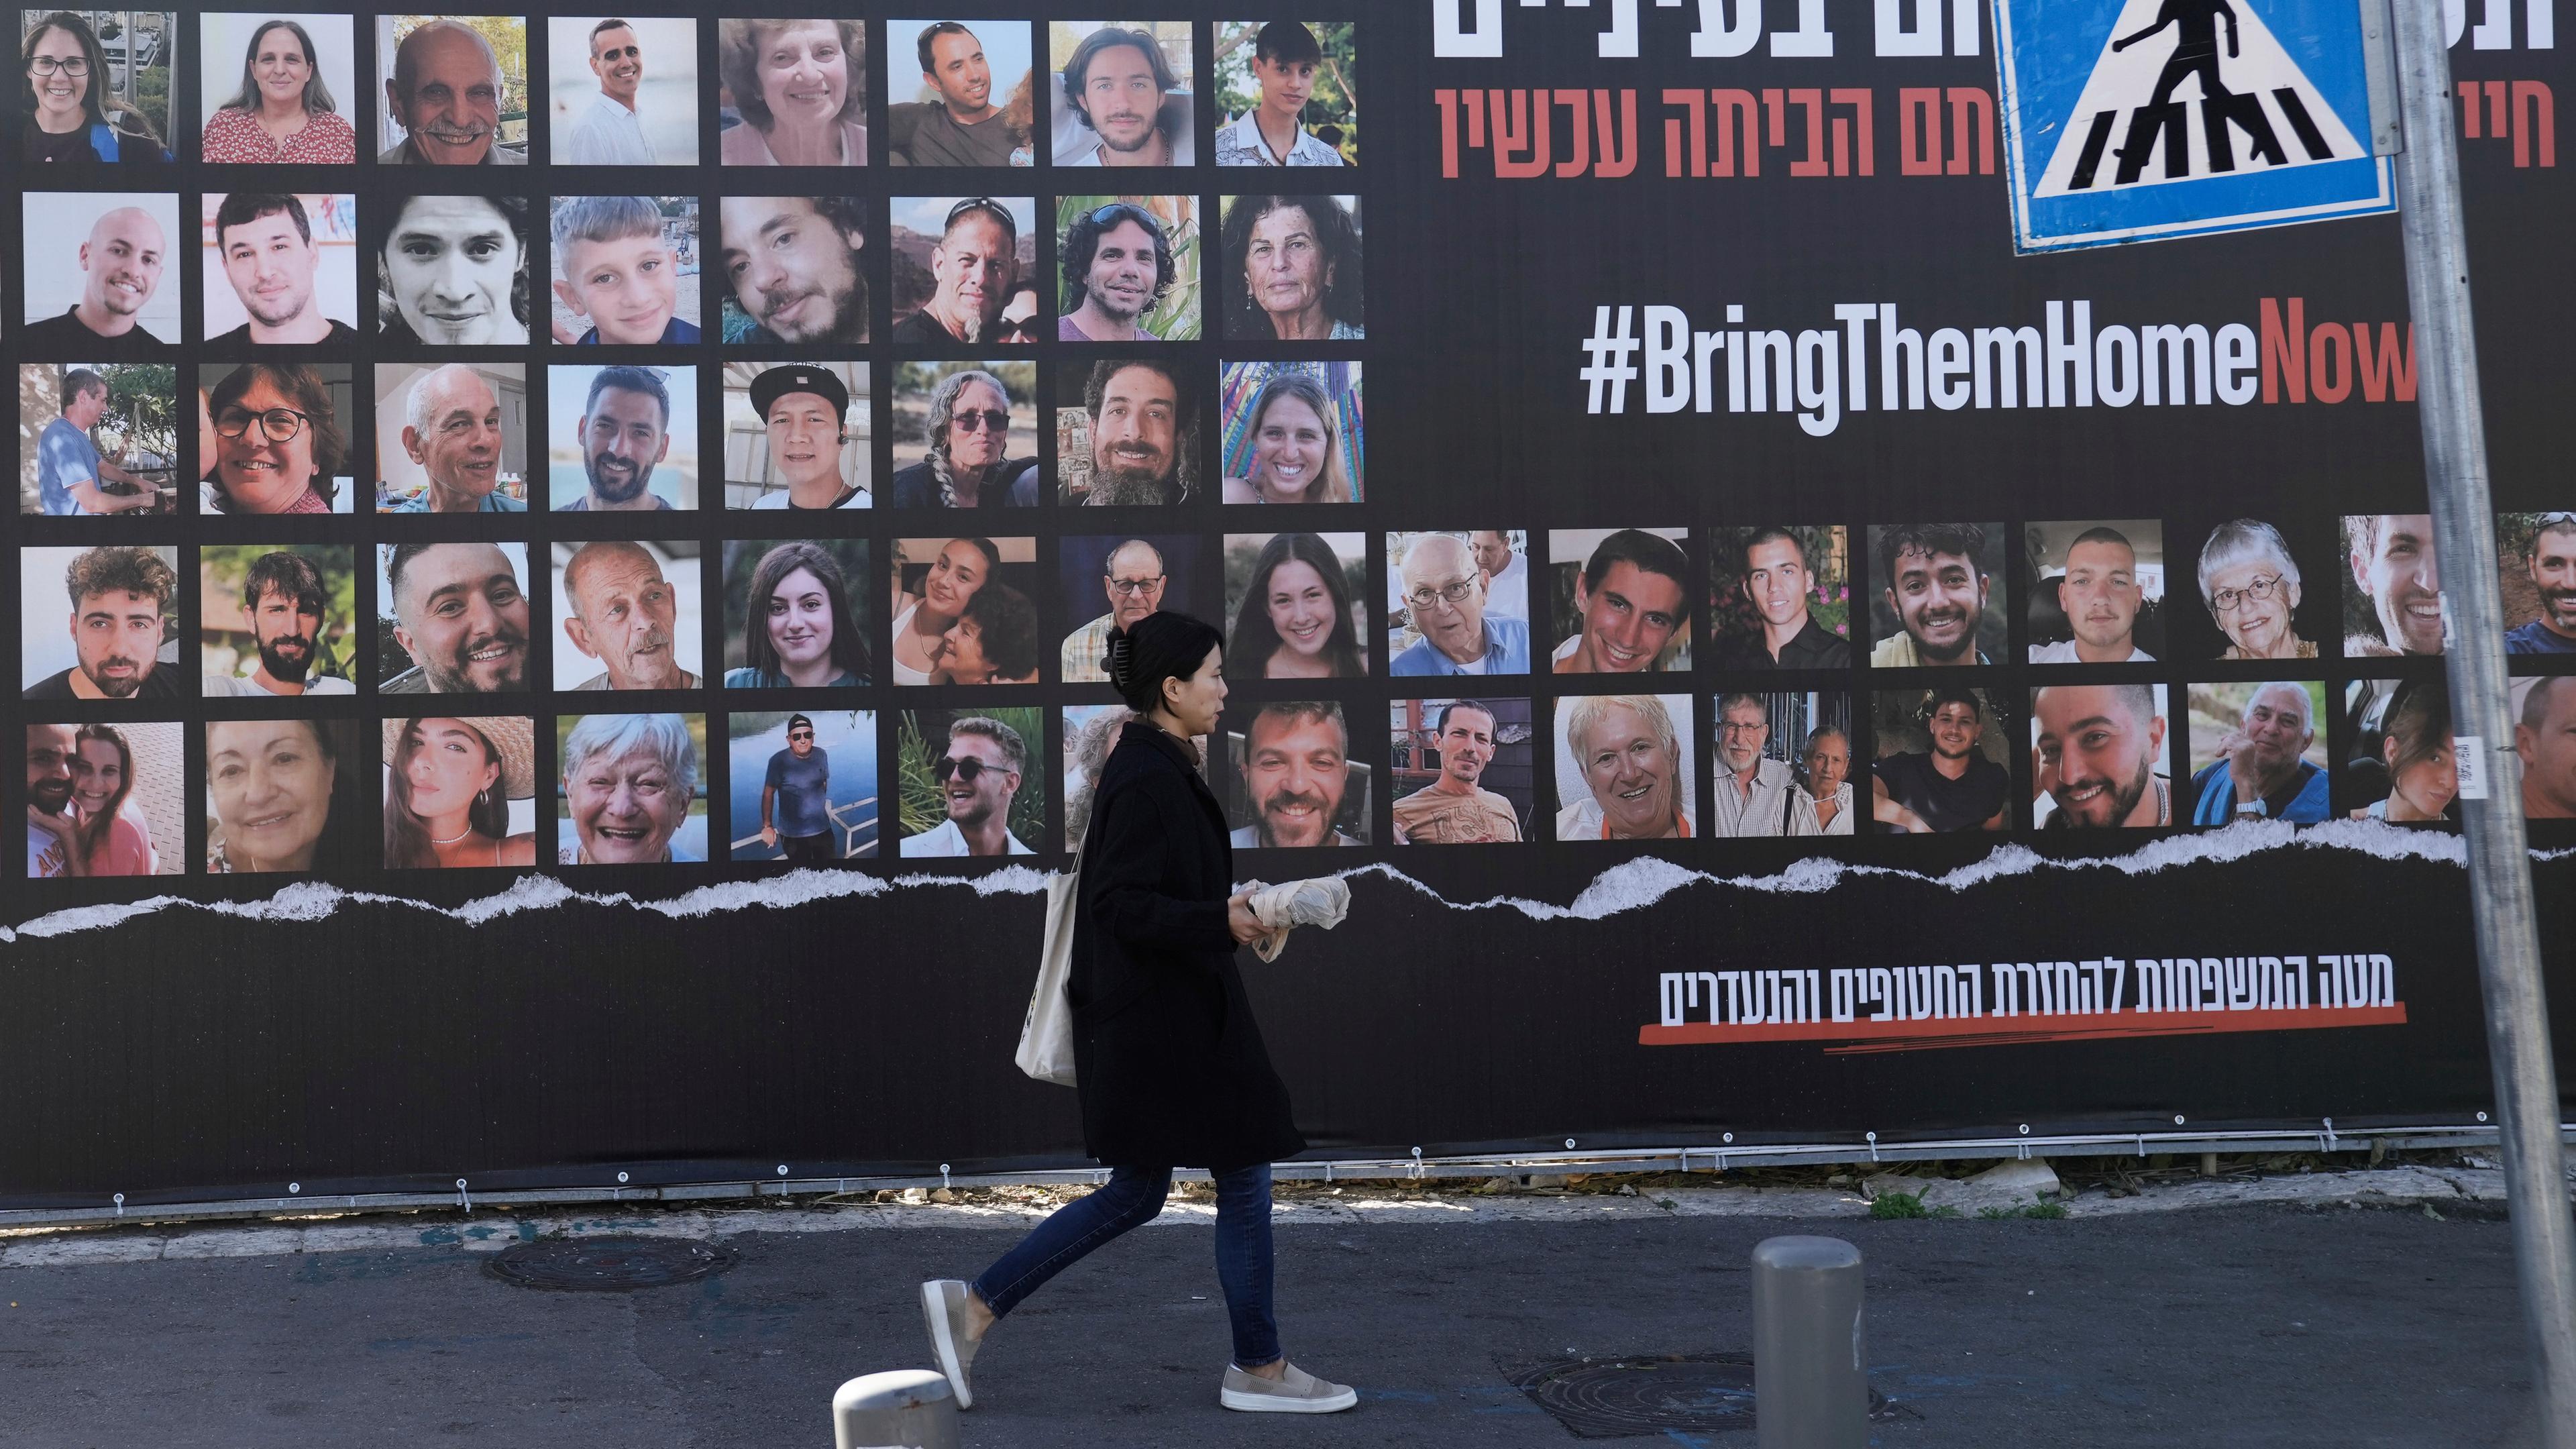  Eine Frau geht in Jerusalem an einem Plakat vorbei, das die Rückkehr von etwa 240 Geiseln fordert, die während des Hamas-Angriffs auf Israel am 7. Oktober entführt worden waren. 